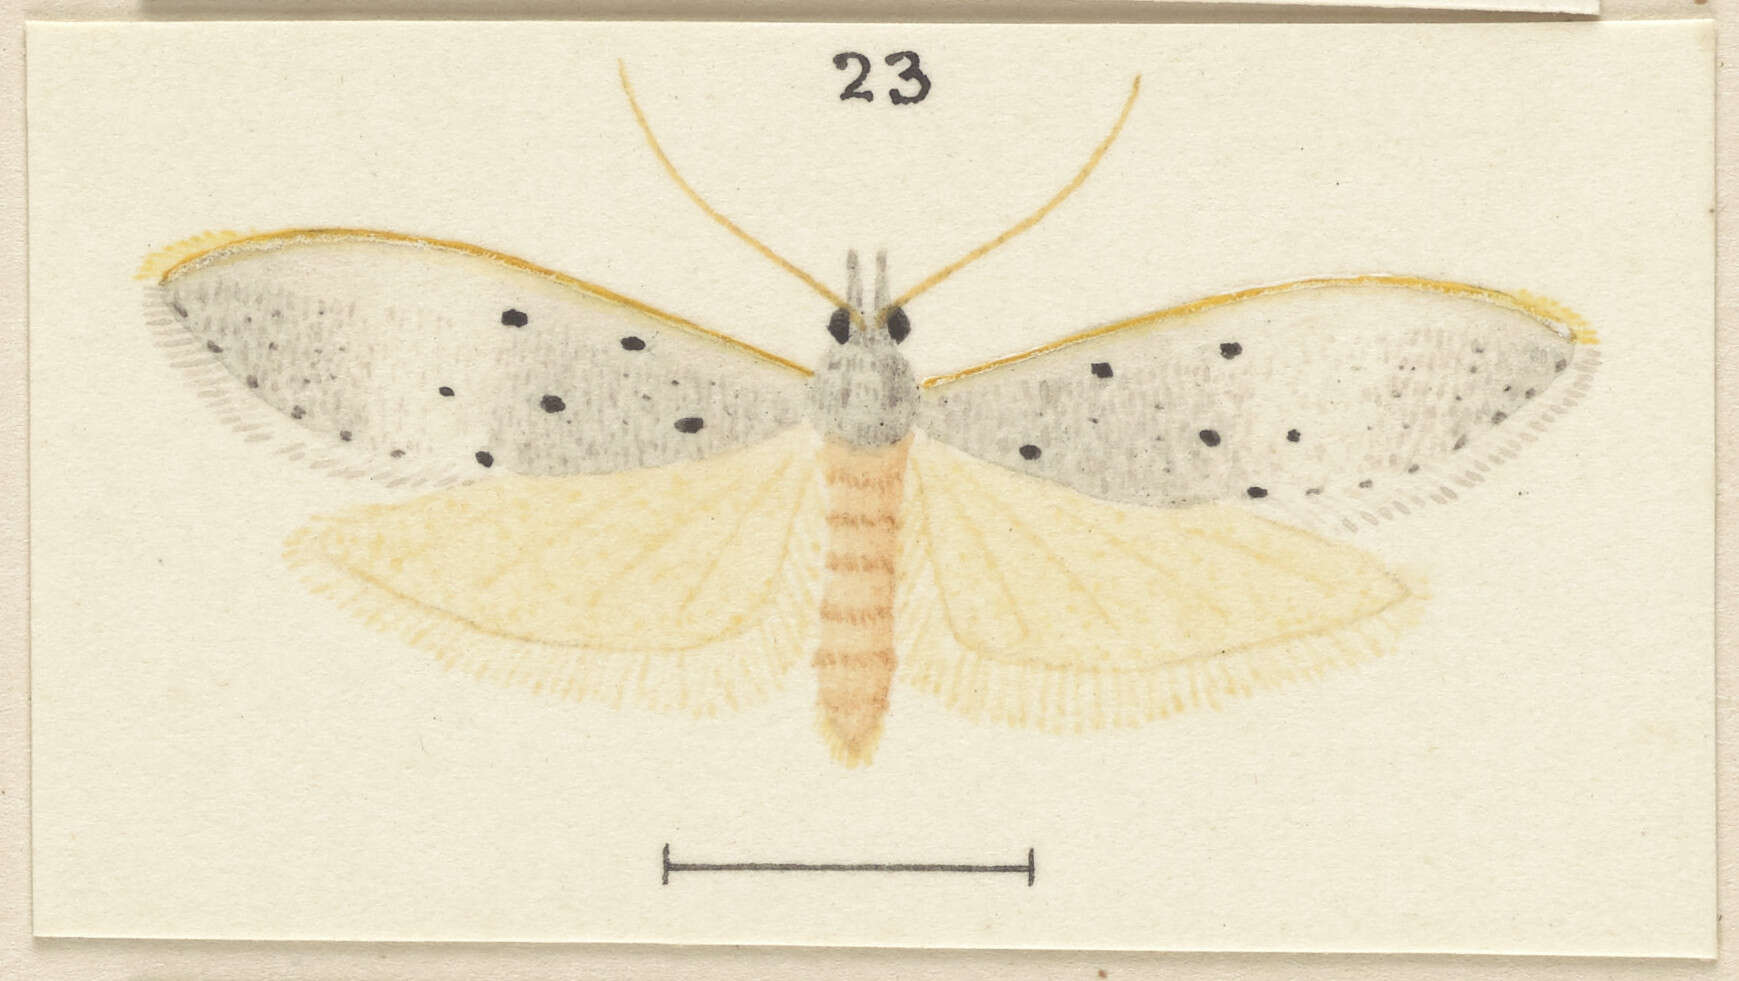 Image of Paramorpha marginata